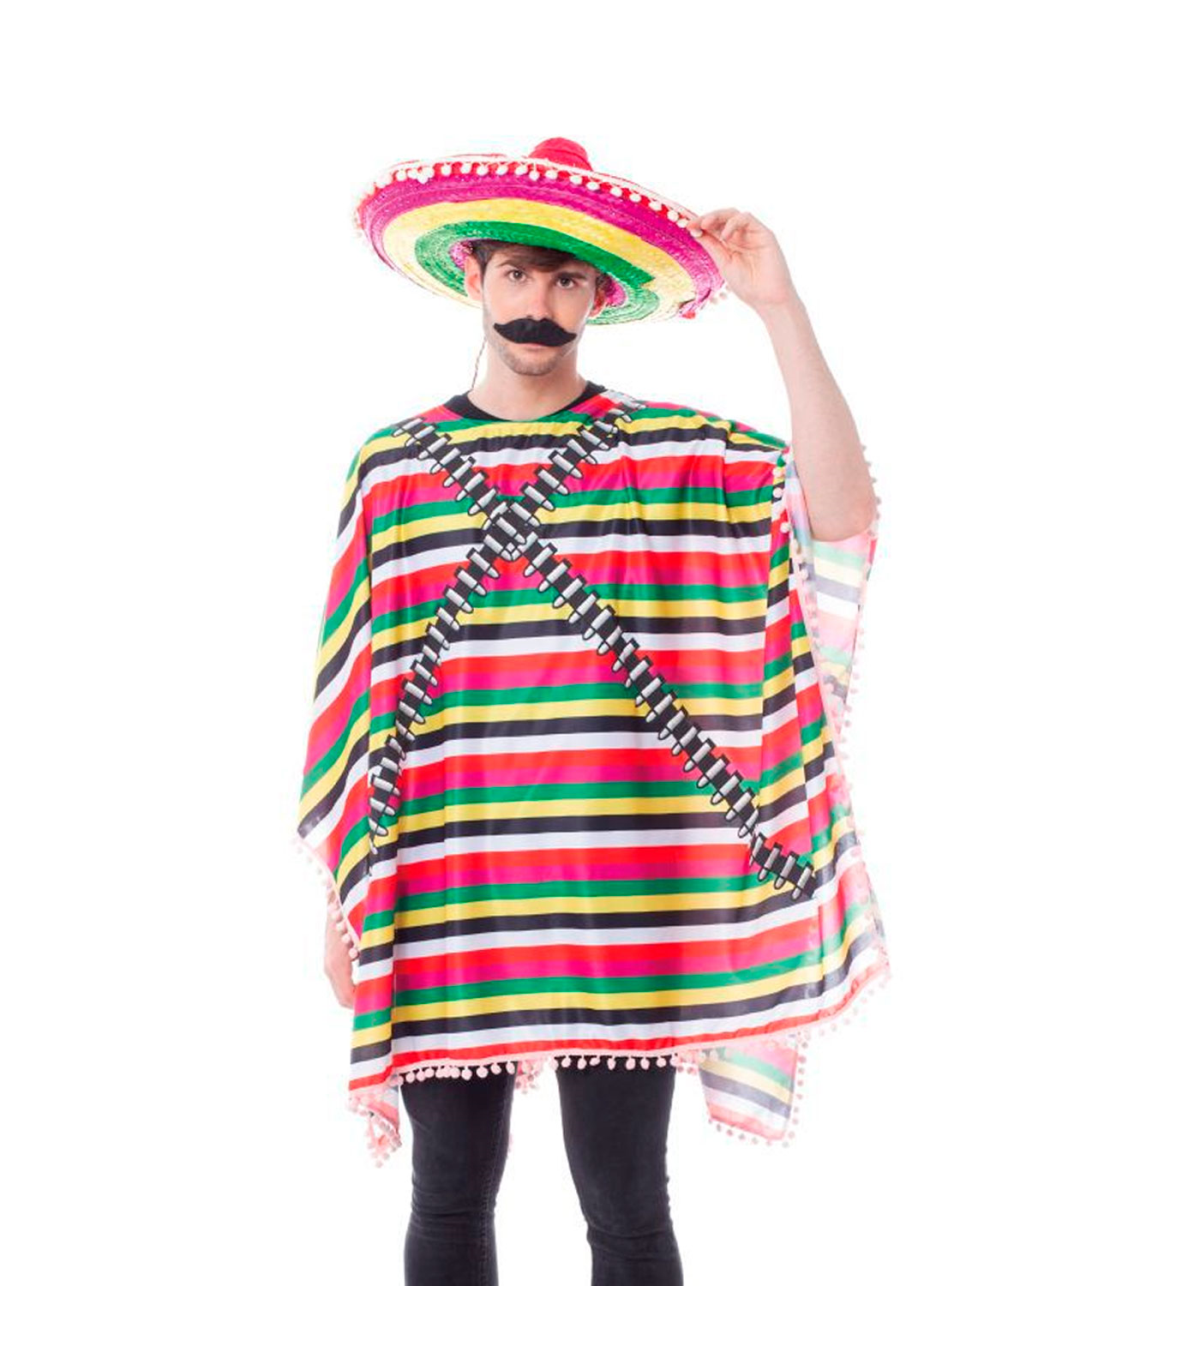 Tradineur - Disfraz de mexicano para adulto - Fabricado en fibra sintética  - Incluye Poncho - Ideal para carnaval, Halloween, co